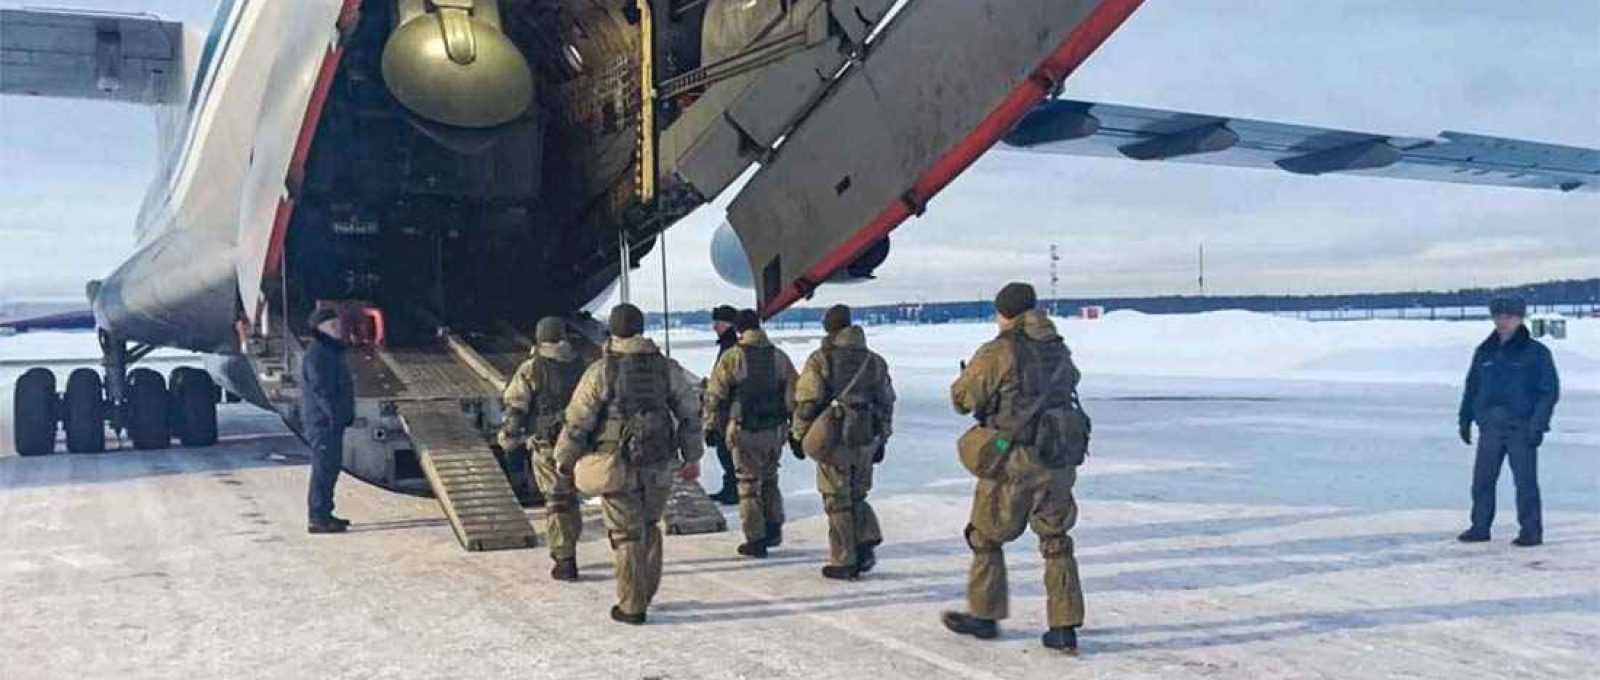 Militares russos a caminho do Cazaquistão embarcam em uma aeronave em um campo de aviação perto de Moscou em 6 de janeiro (Serviço de Imprensa do Ministério da Defesa Russo/EPA-EFE).